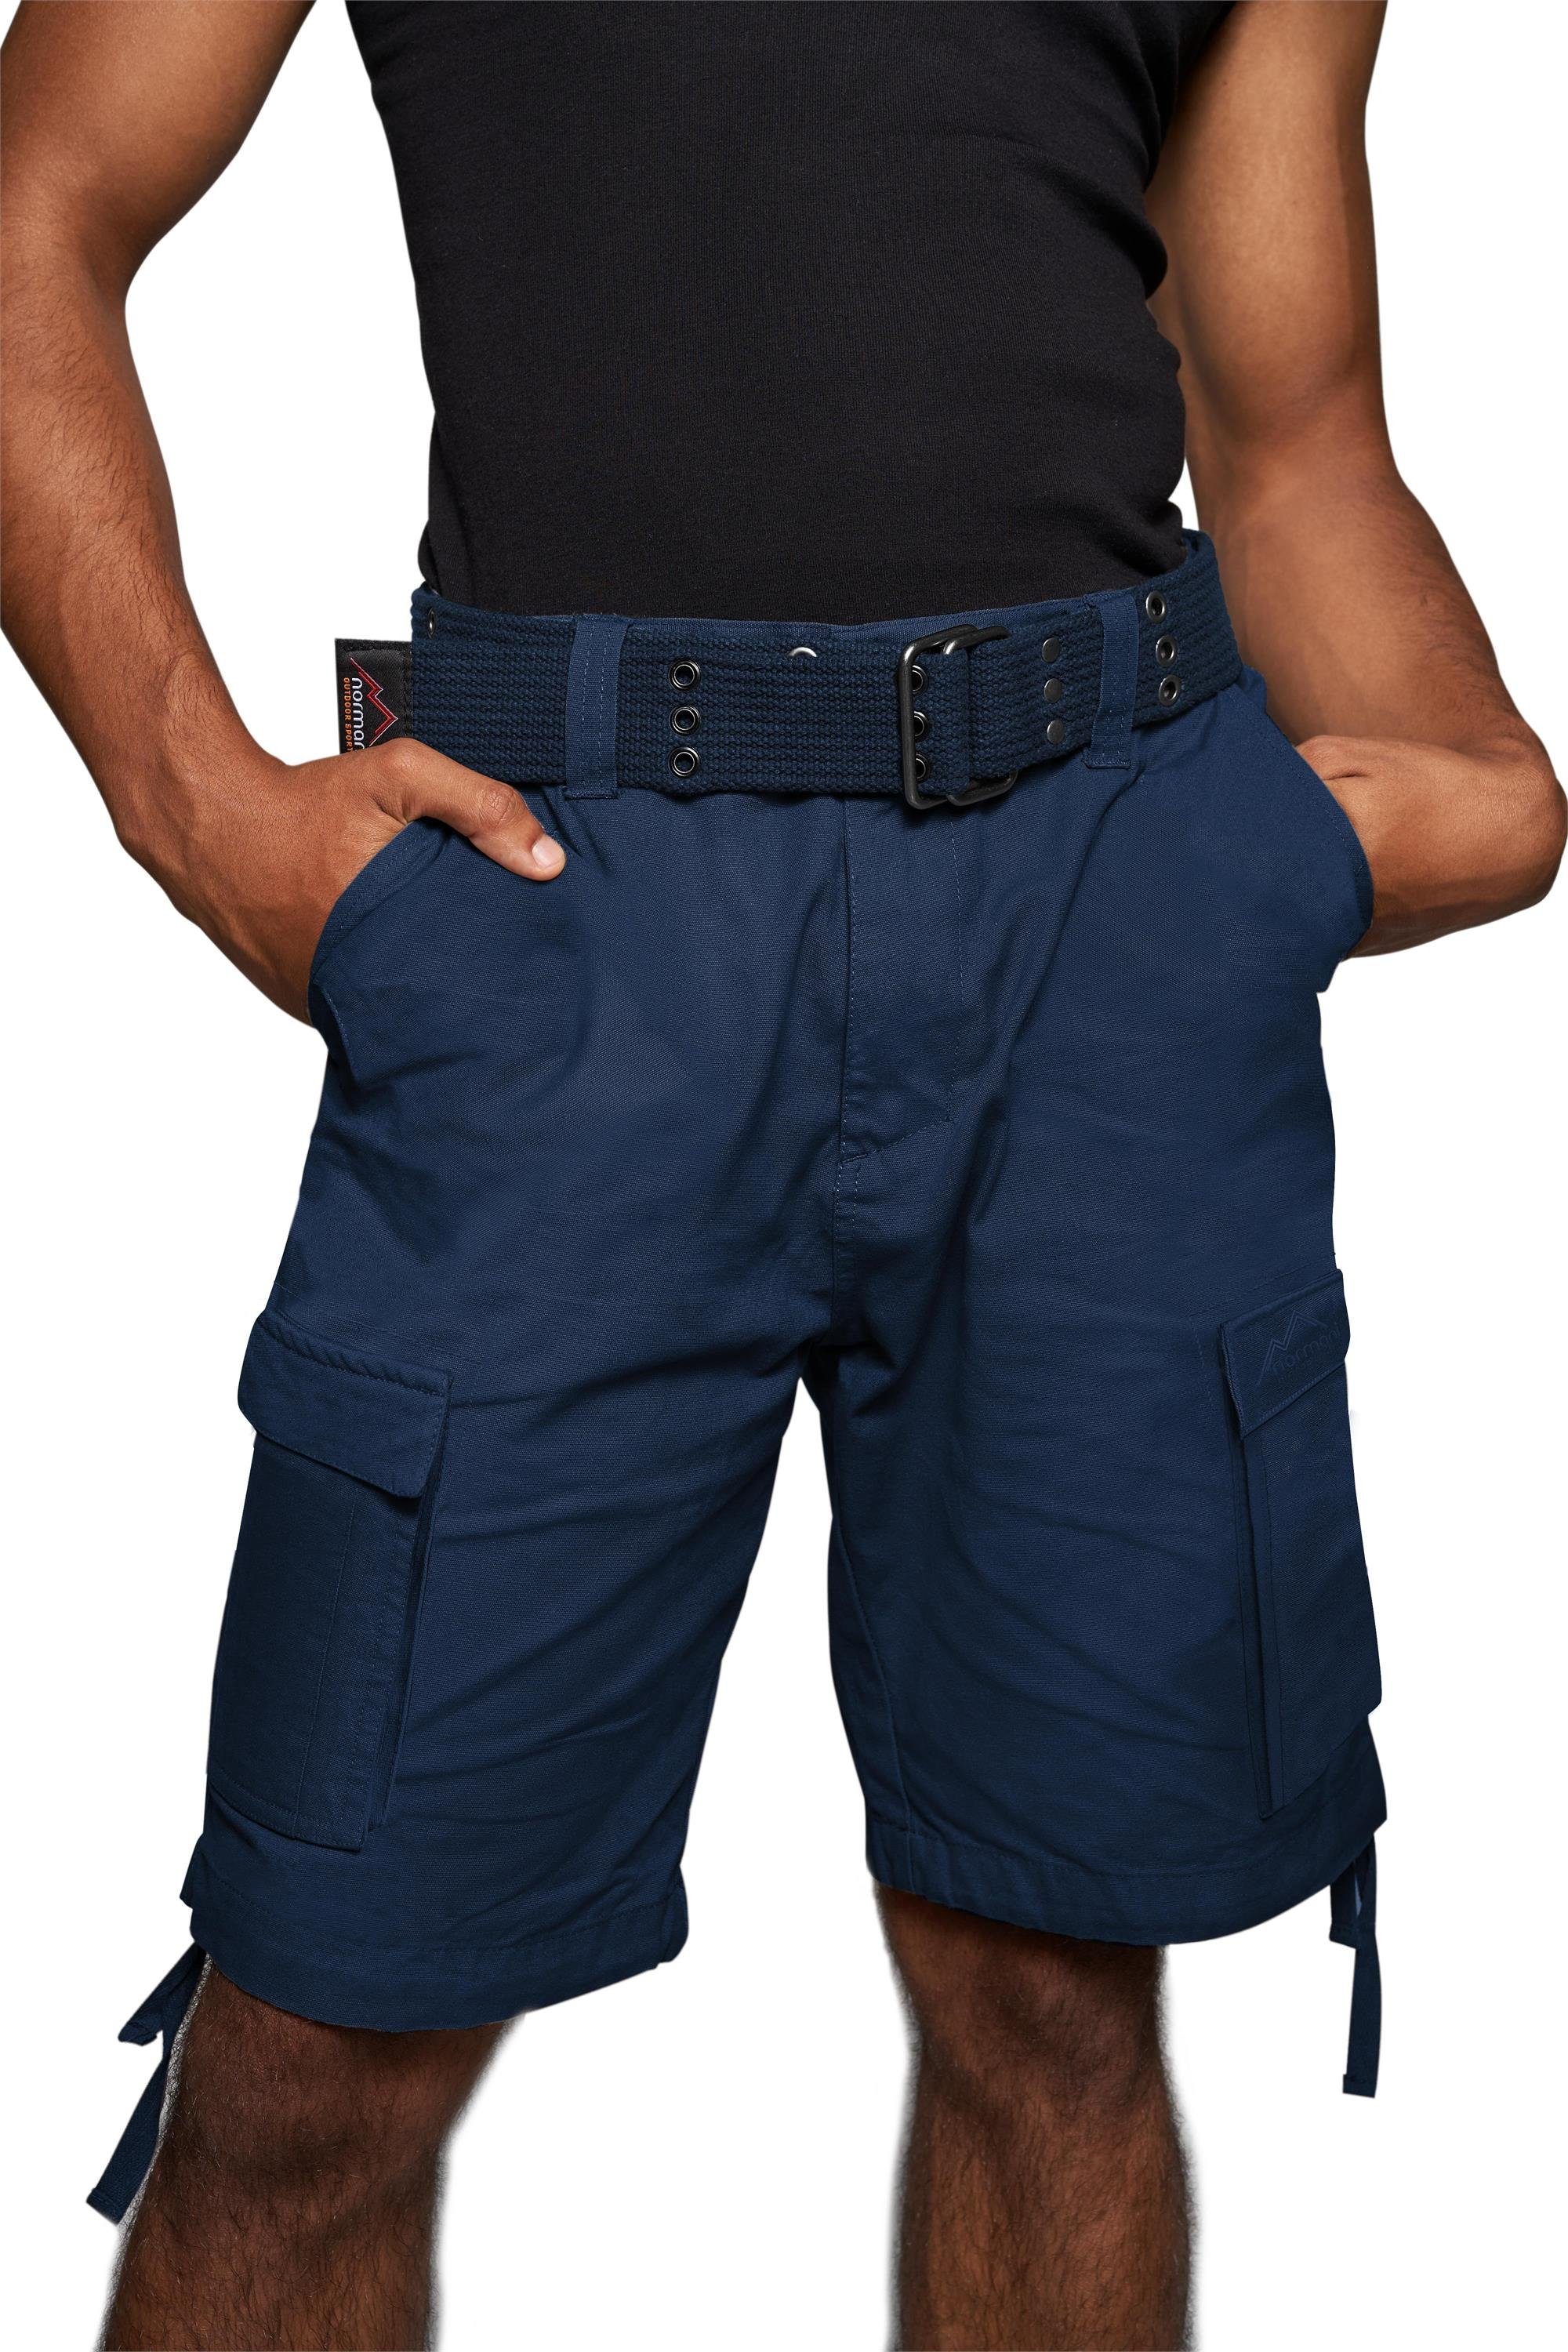 normani Bermudas Sommer-Shorts „Kalahari“ mit Gürtel „Wadi“ kurze Sommerhose Freizeithose Vintage-Shorts - 100% nachhaltige Bio-Baumwolle Navy